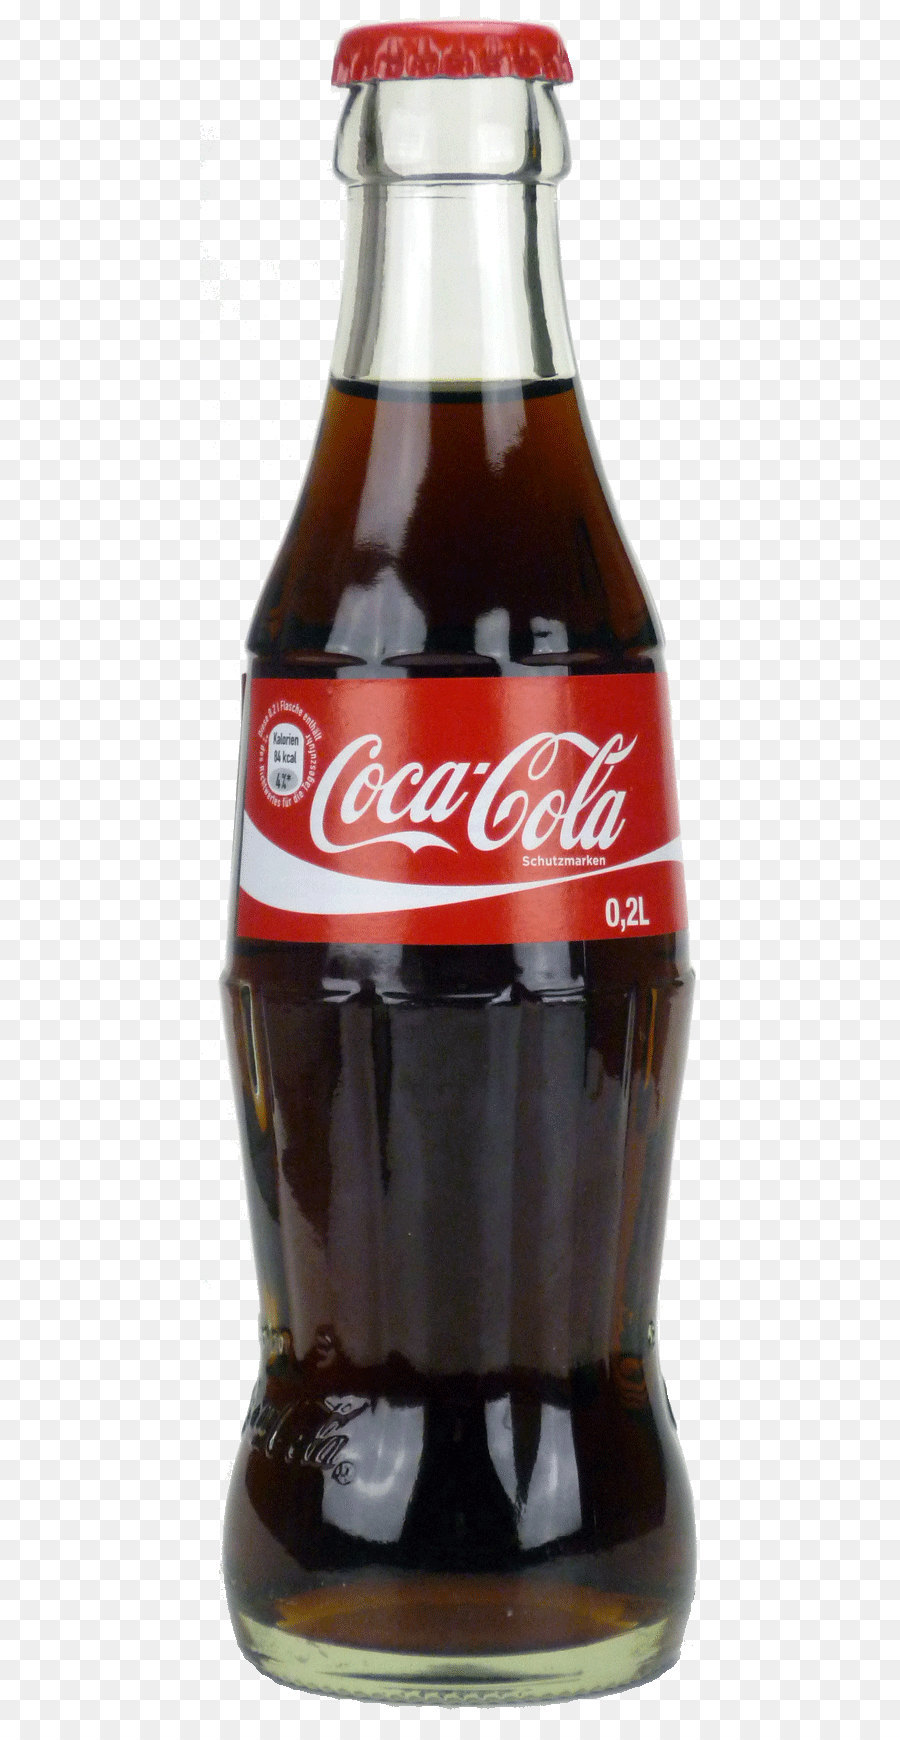 Cola Bottle PNG - 136713